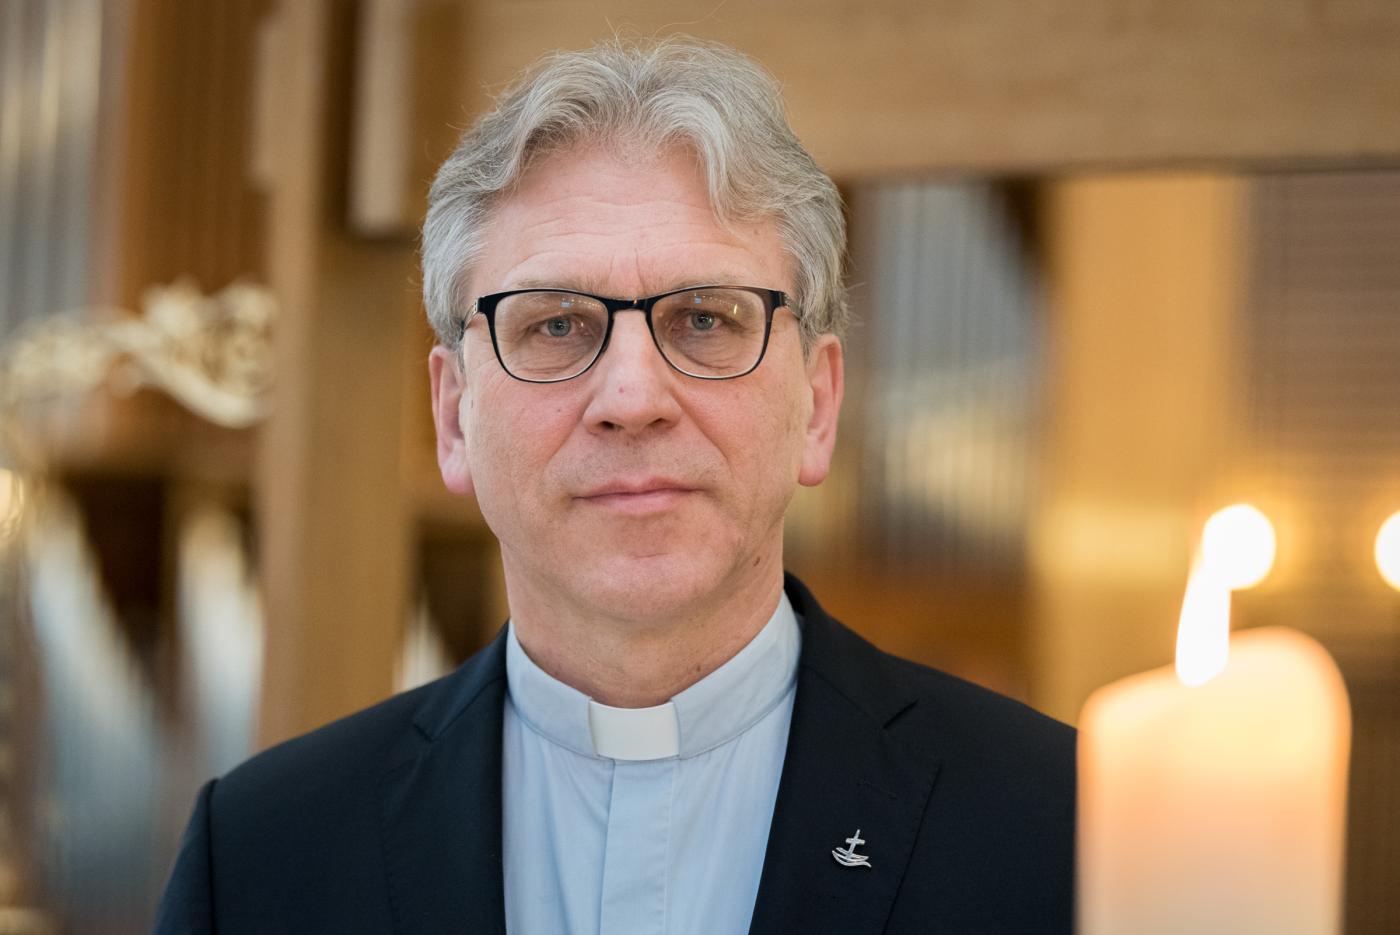 Rev. Dr Olav Fykse Tveit. Photo: Albin Hillert/WCC